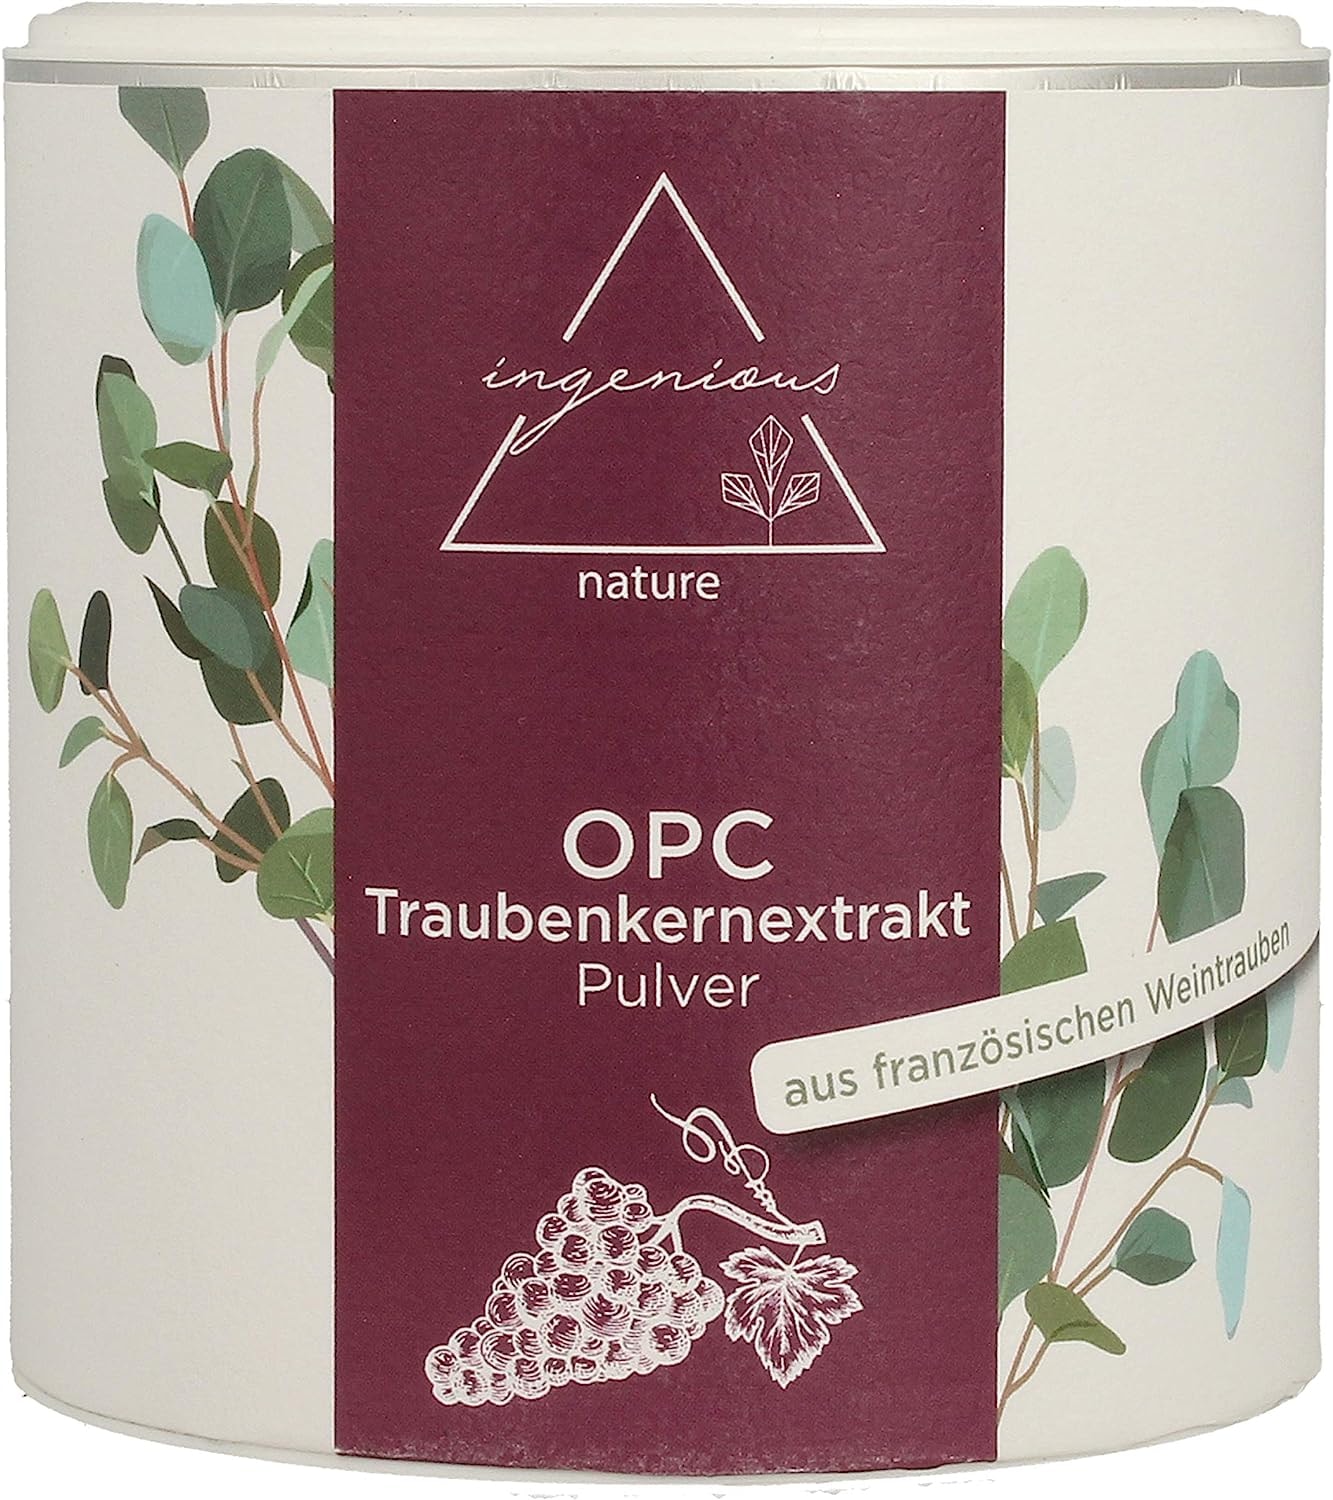 ingenious nature OPC Traubenkernextrakt Pulver, hochdosiert, 71% OPC Gehalt nach HPLC (200g)